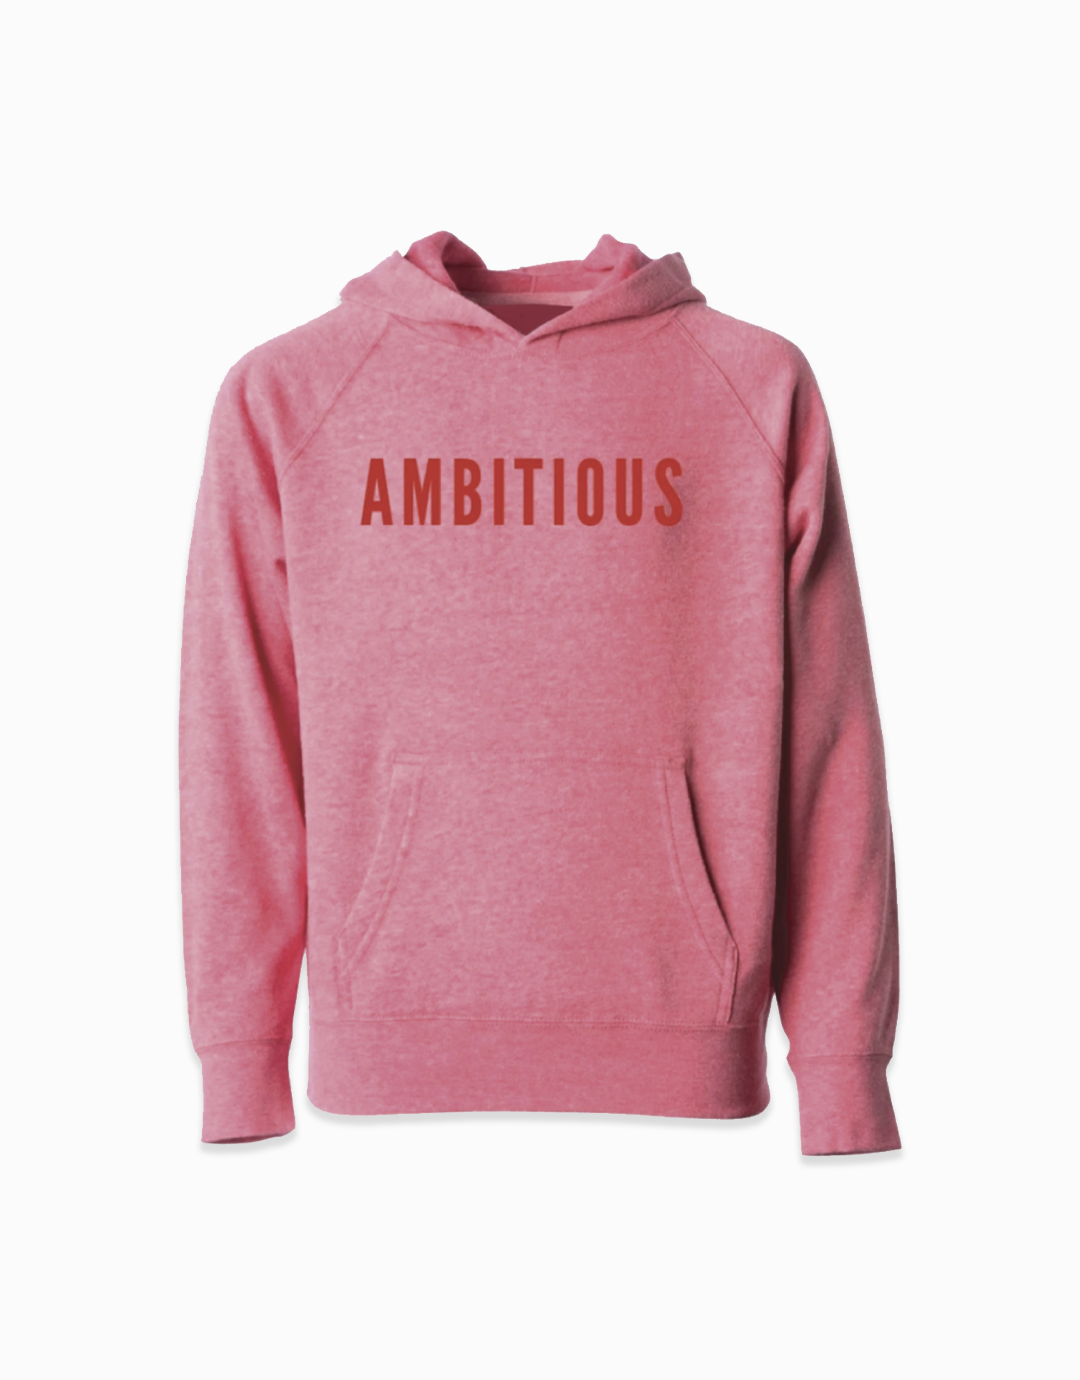 Ambitious Girl Sweatshirt